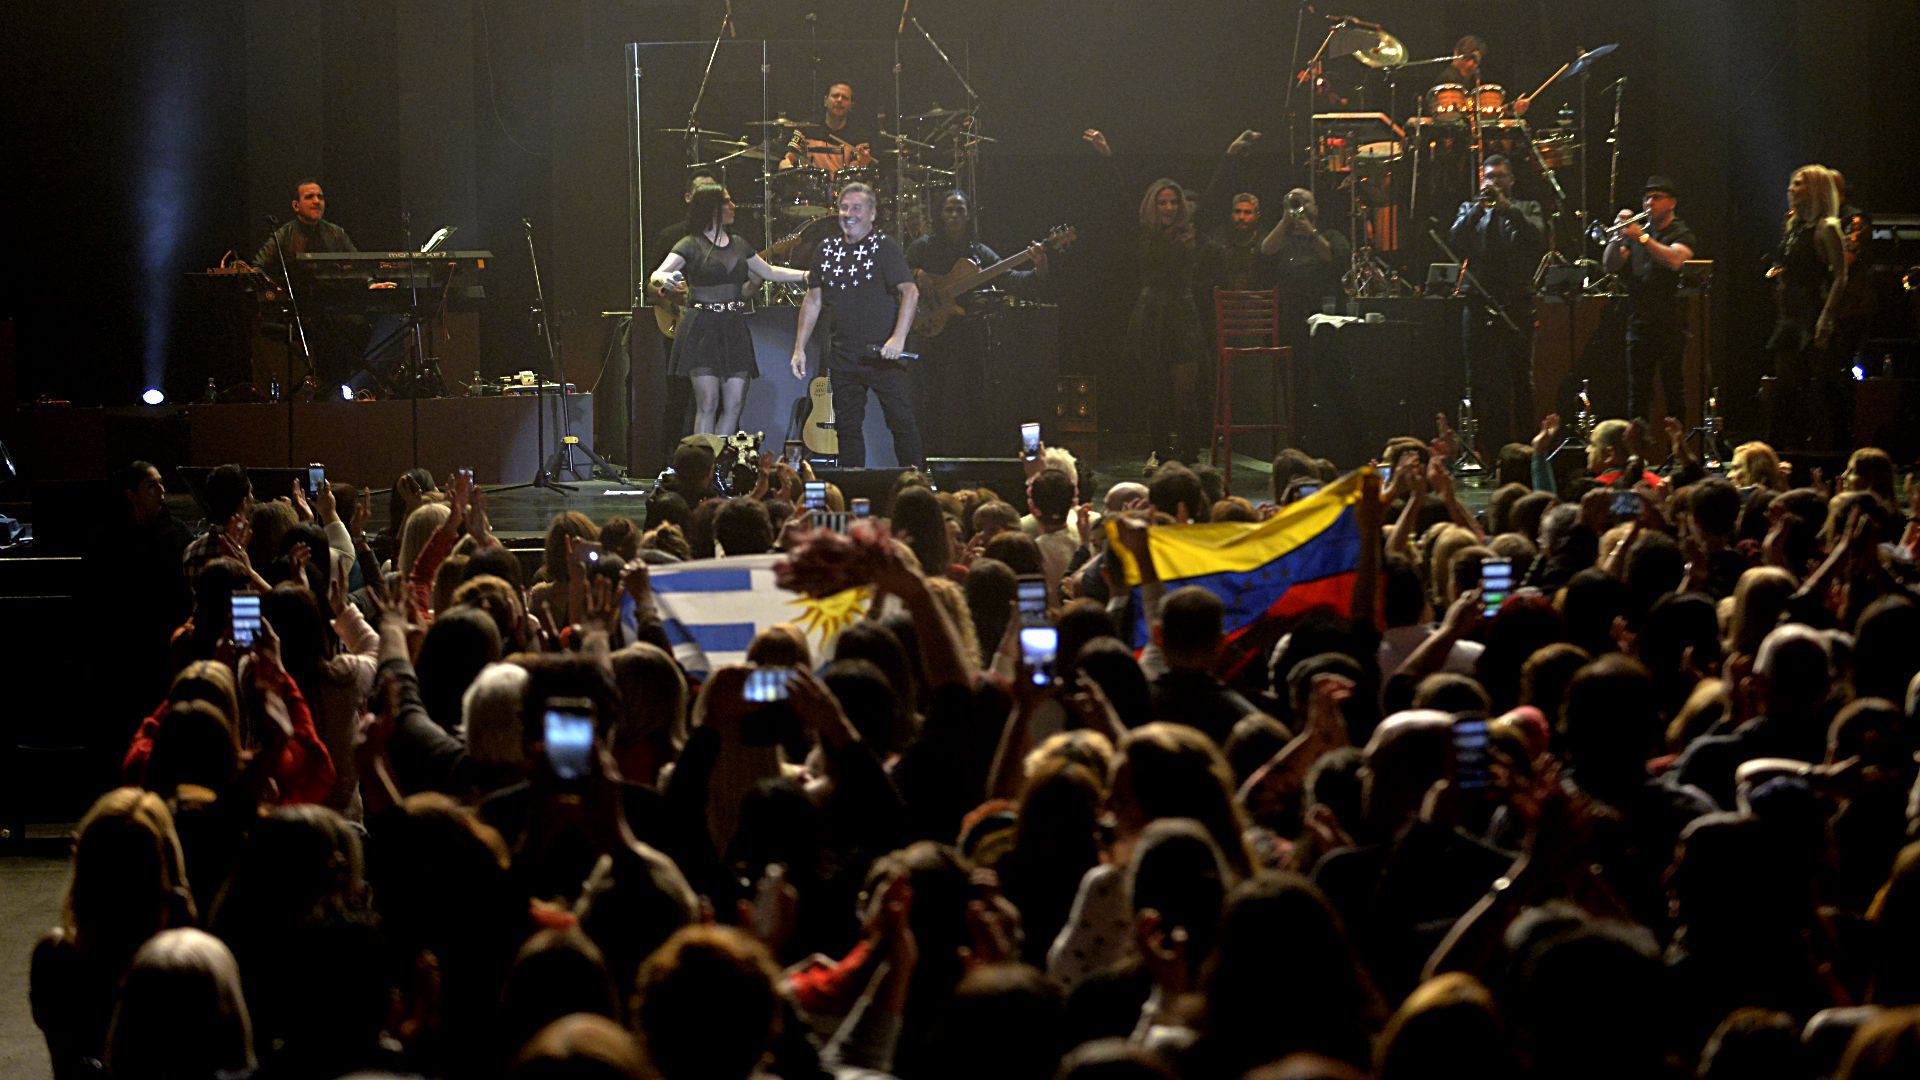 Entre el público, banderas argentinas, venezolanas y hasta uruguayas. Montaner nació en Valentín Alsina, formó su familia en Caracas, vive en Miami; es un poquito de todas partes, y de todos